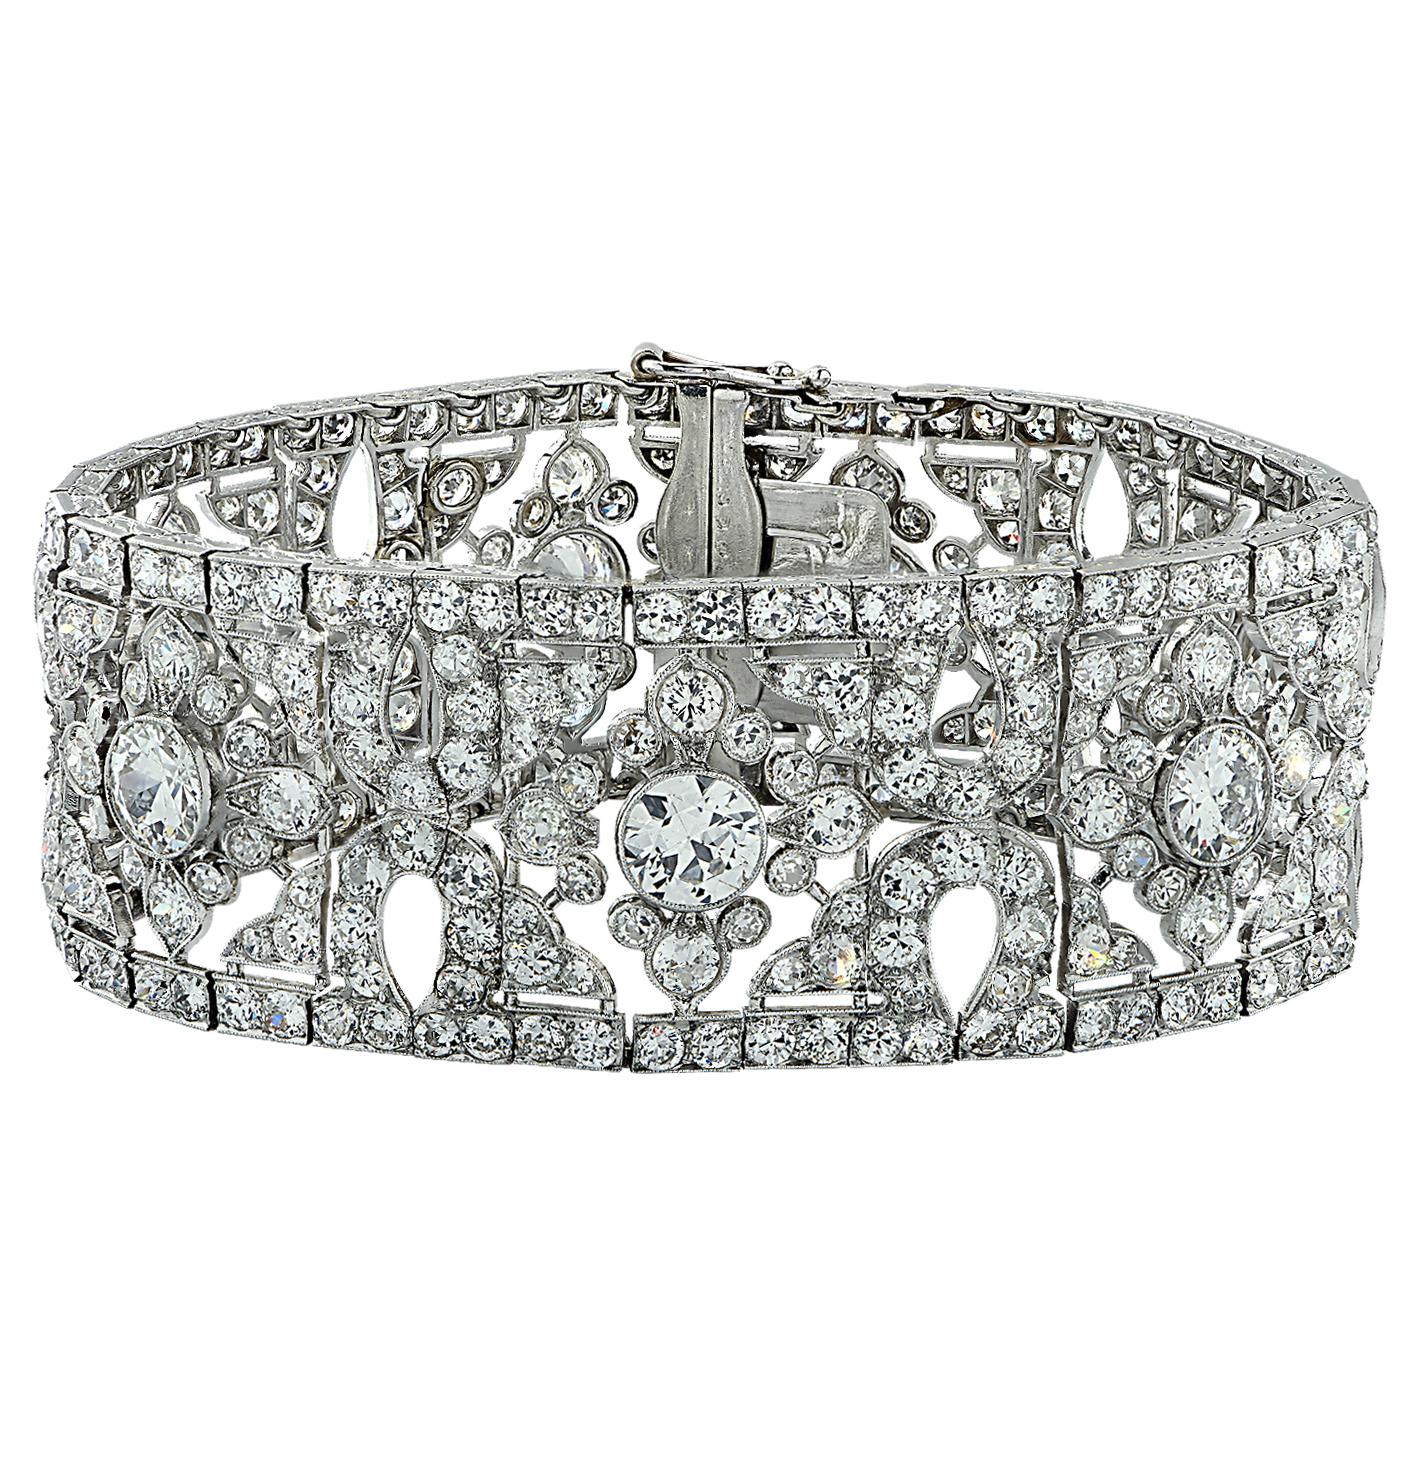 French Belle Époque Cartier 40 Carat Old European Cut Diamond Bracelet For Sale 1